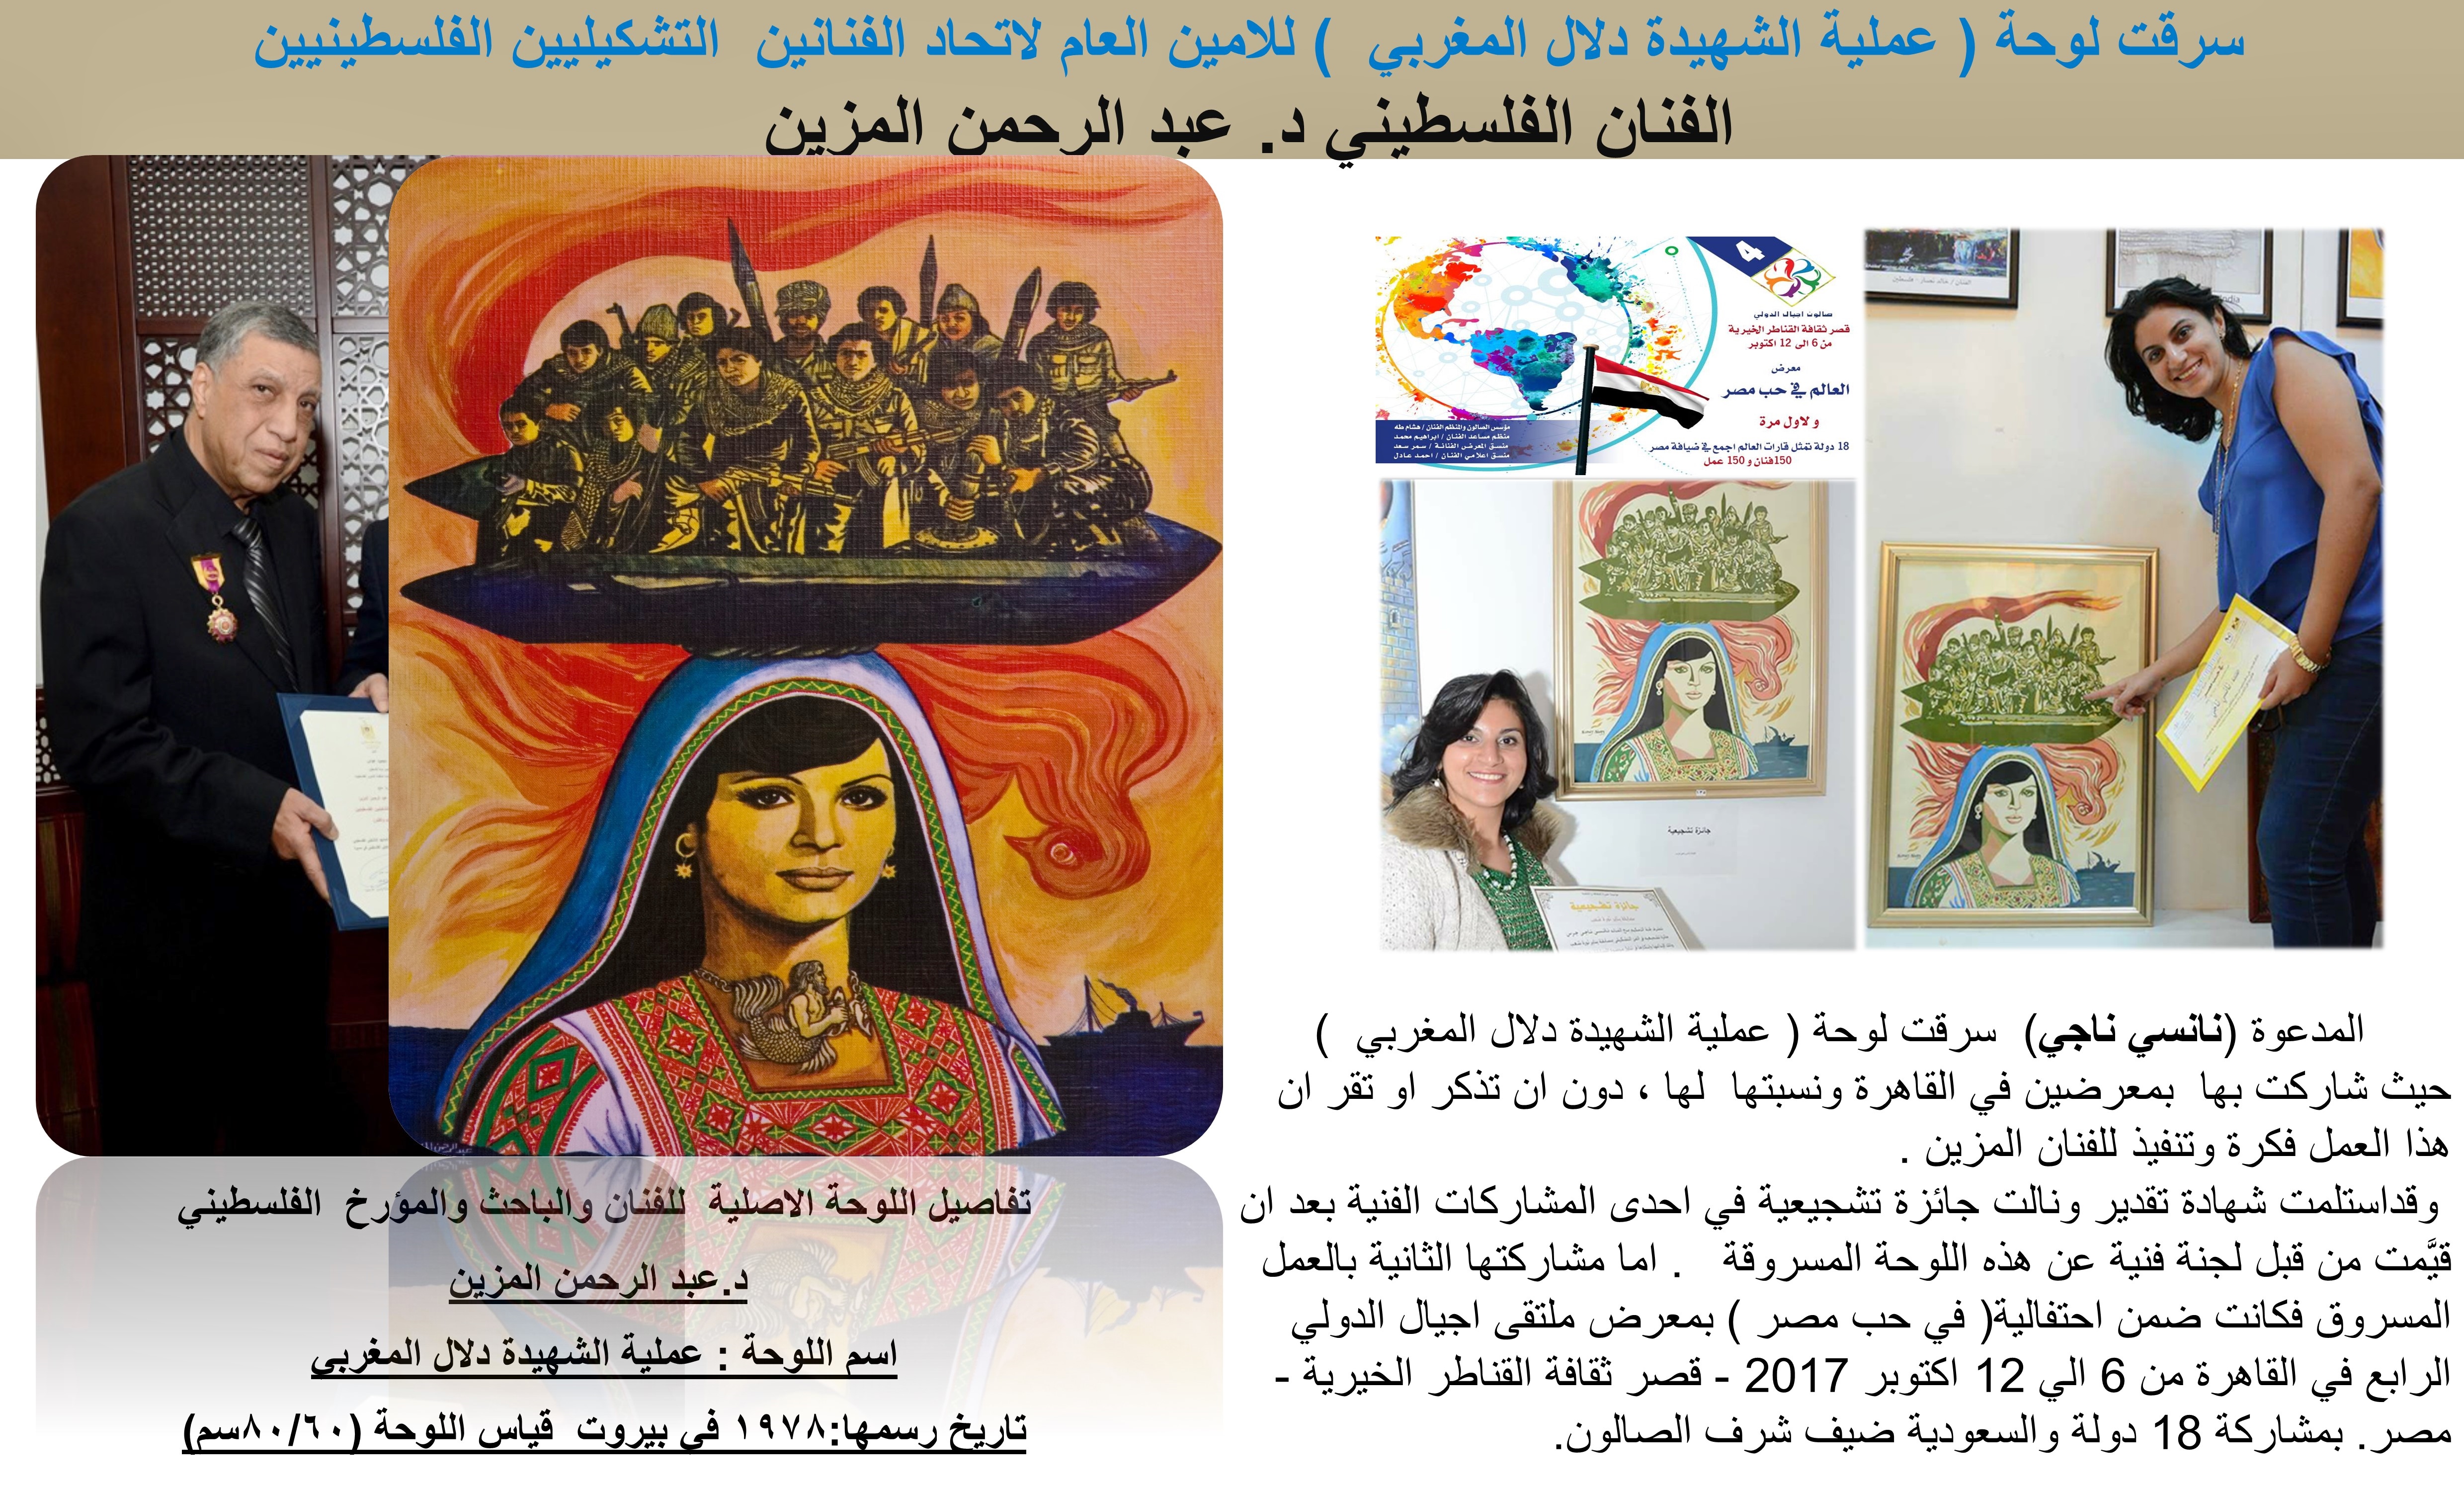 صورة امين عام اتحاد التشكيليين الفلسطينيين وسرقة لوحة فنية